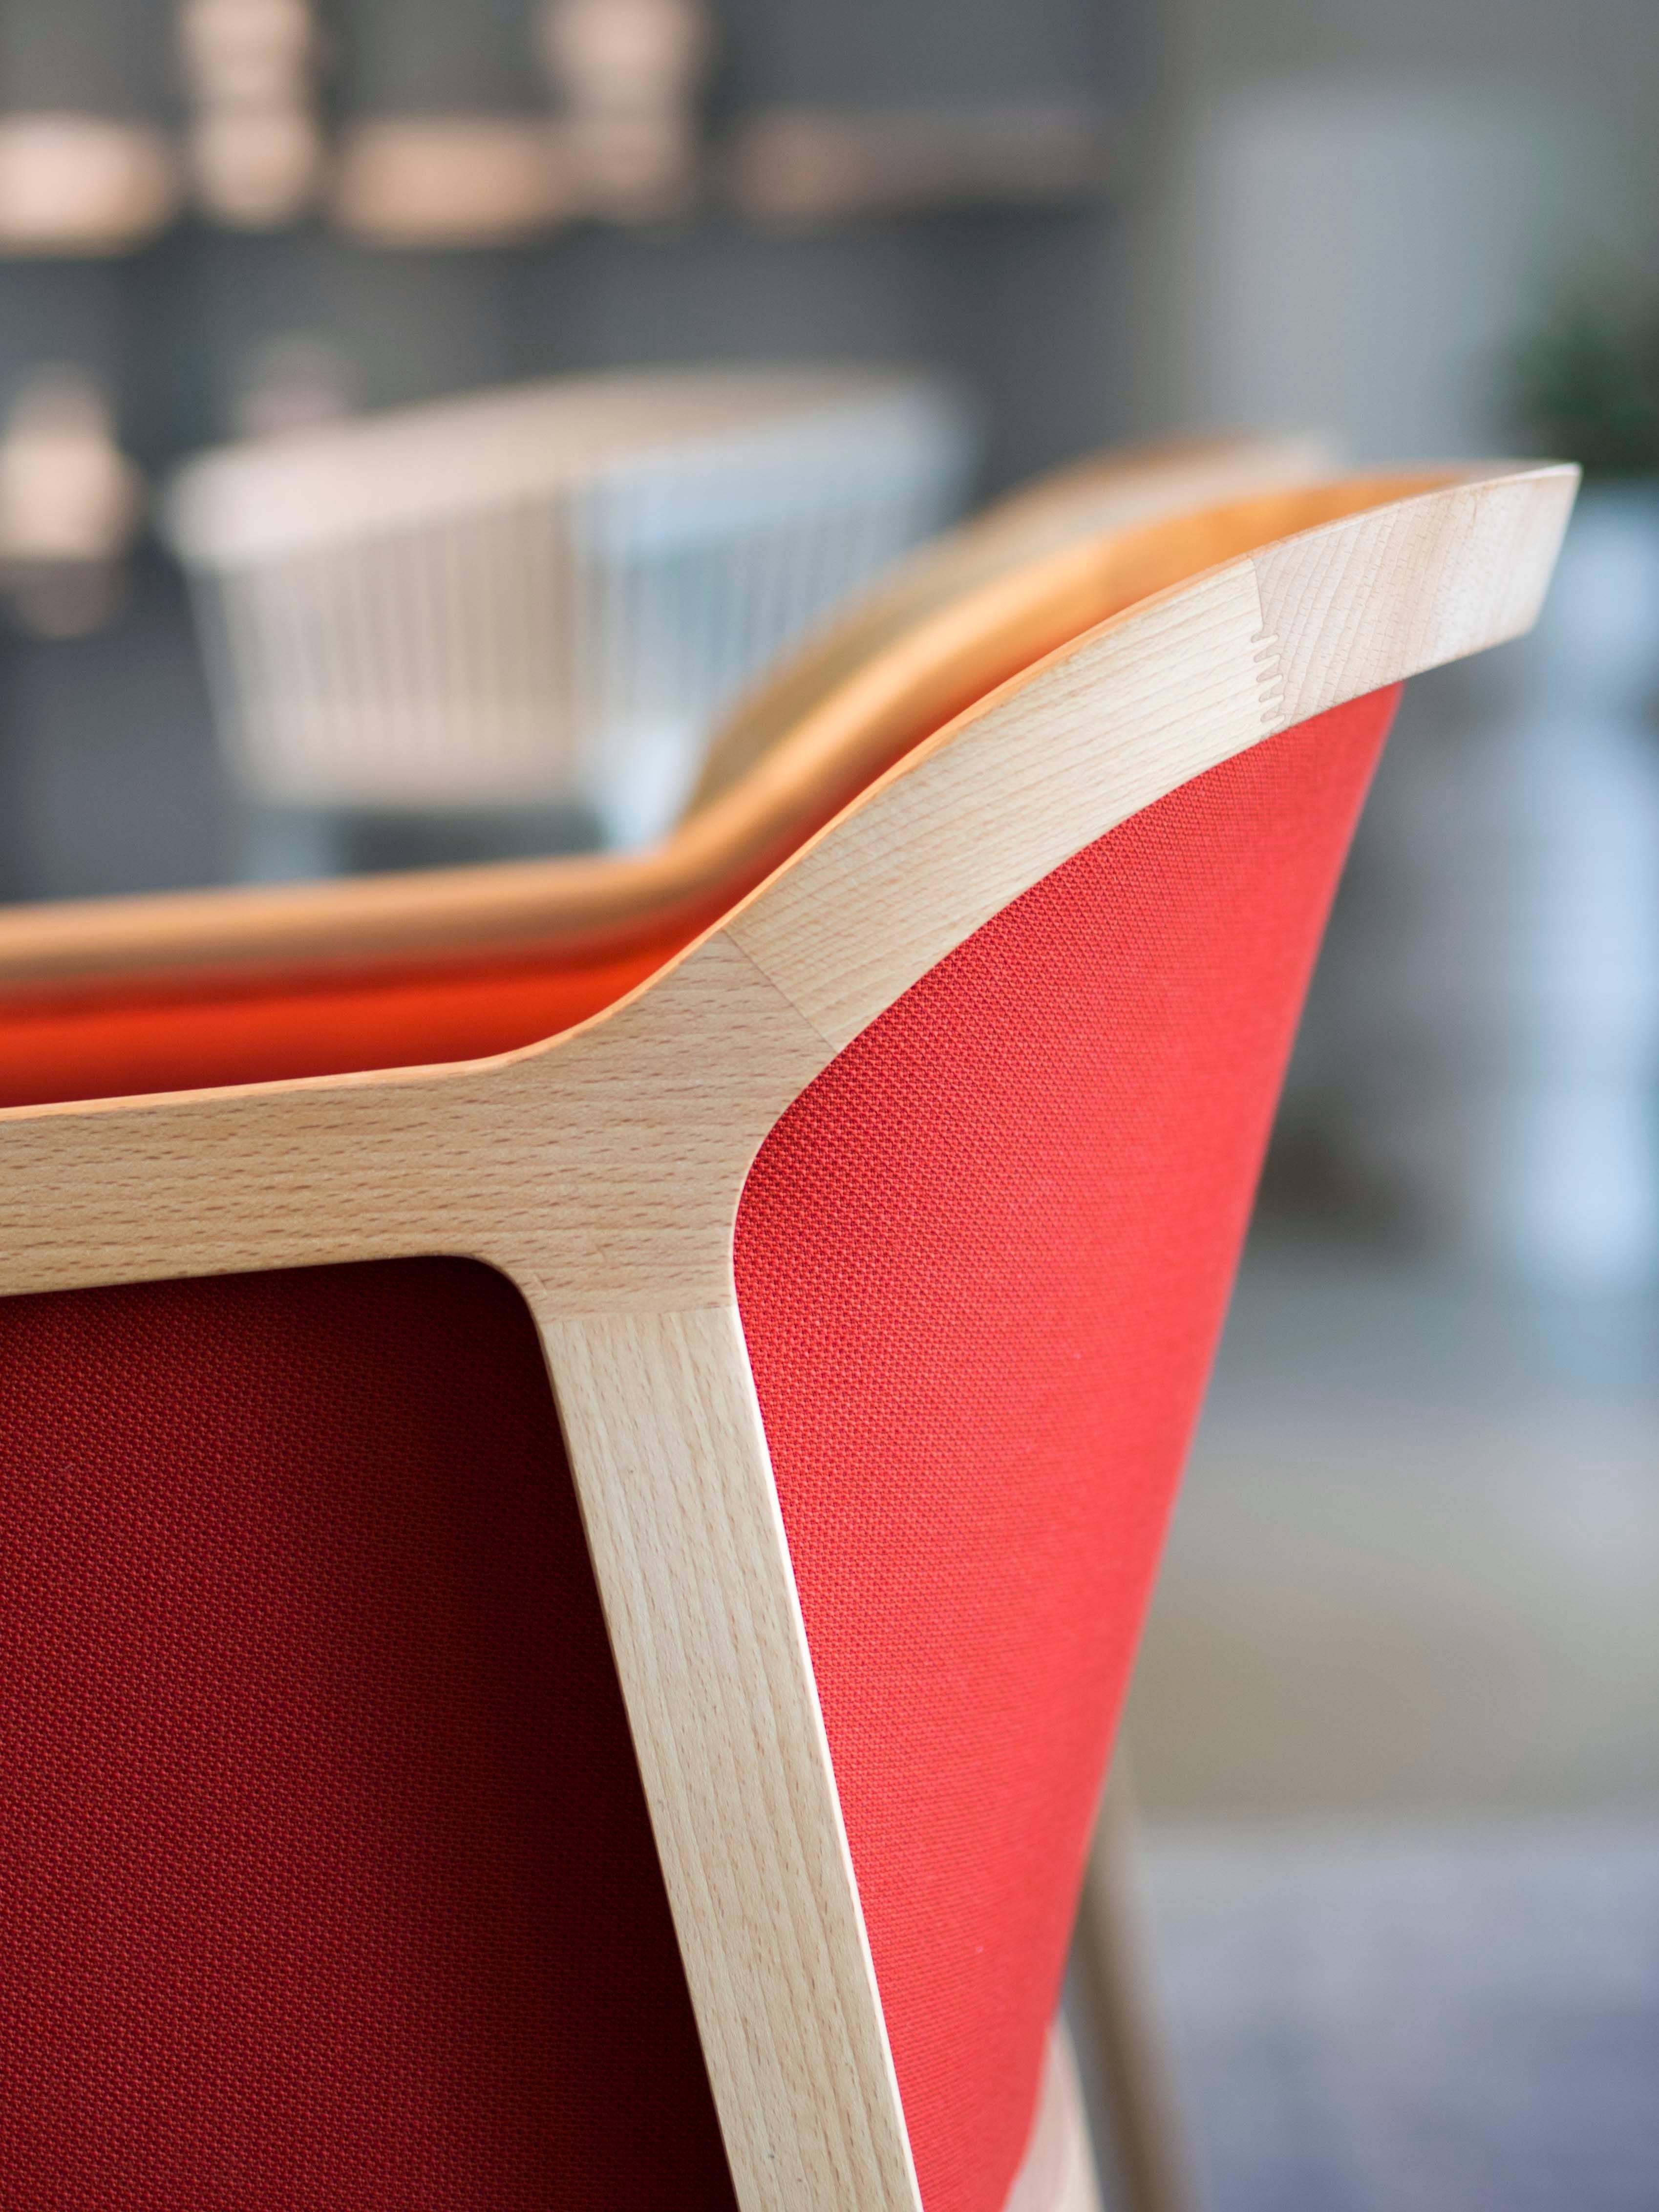 Vienna soft est un petit fauteuil de salle à manger extraordinairement confortable et élégant, conçu par Emmanuel Gallina qui aime citer Brancusi en disant que 